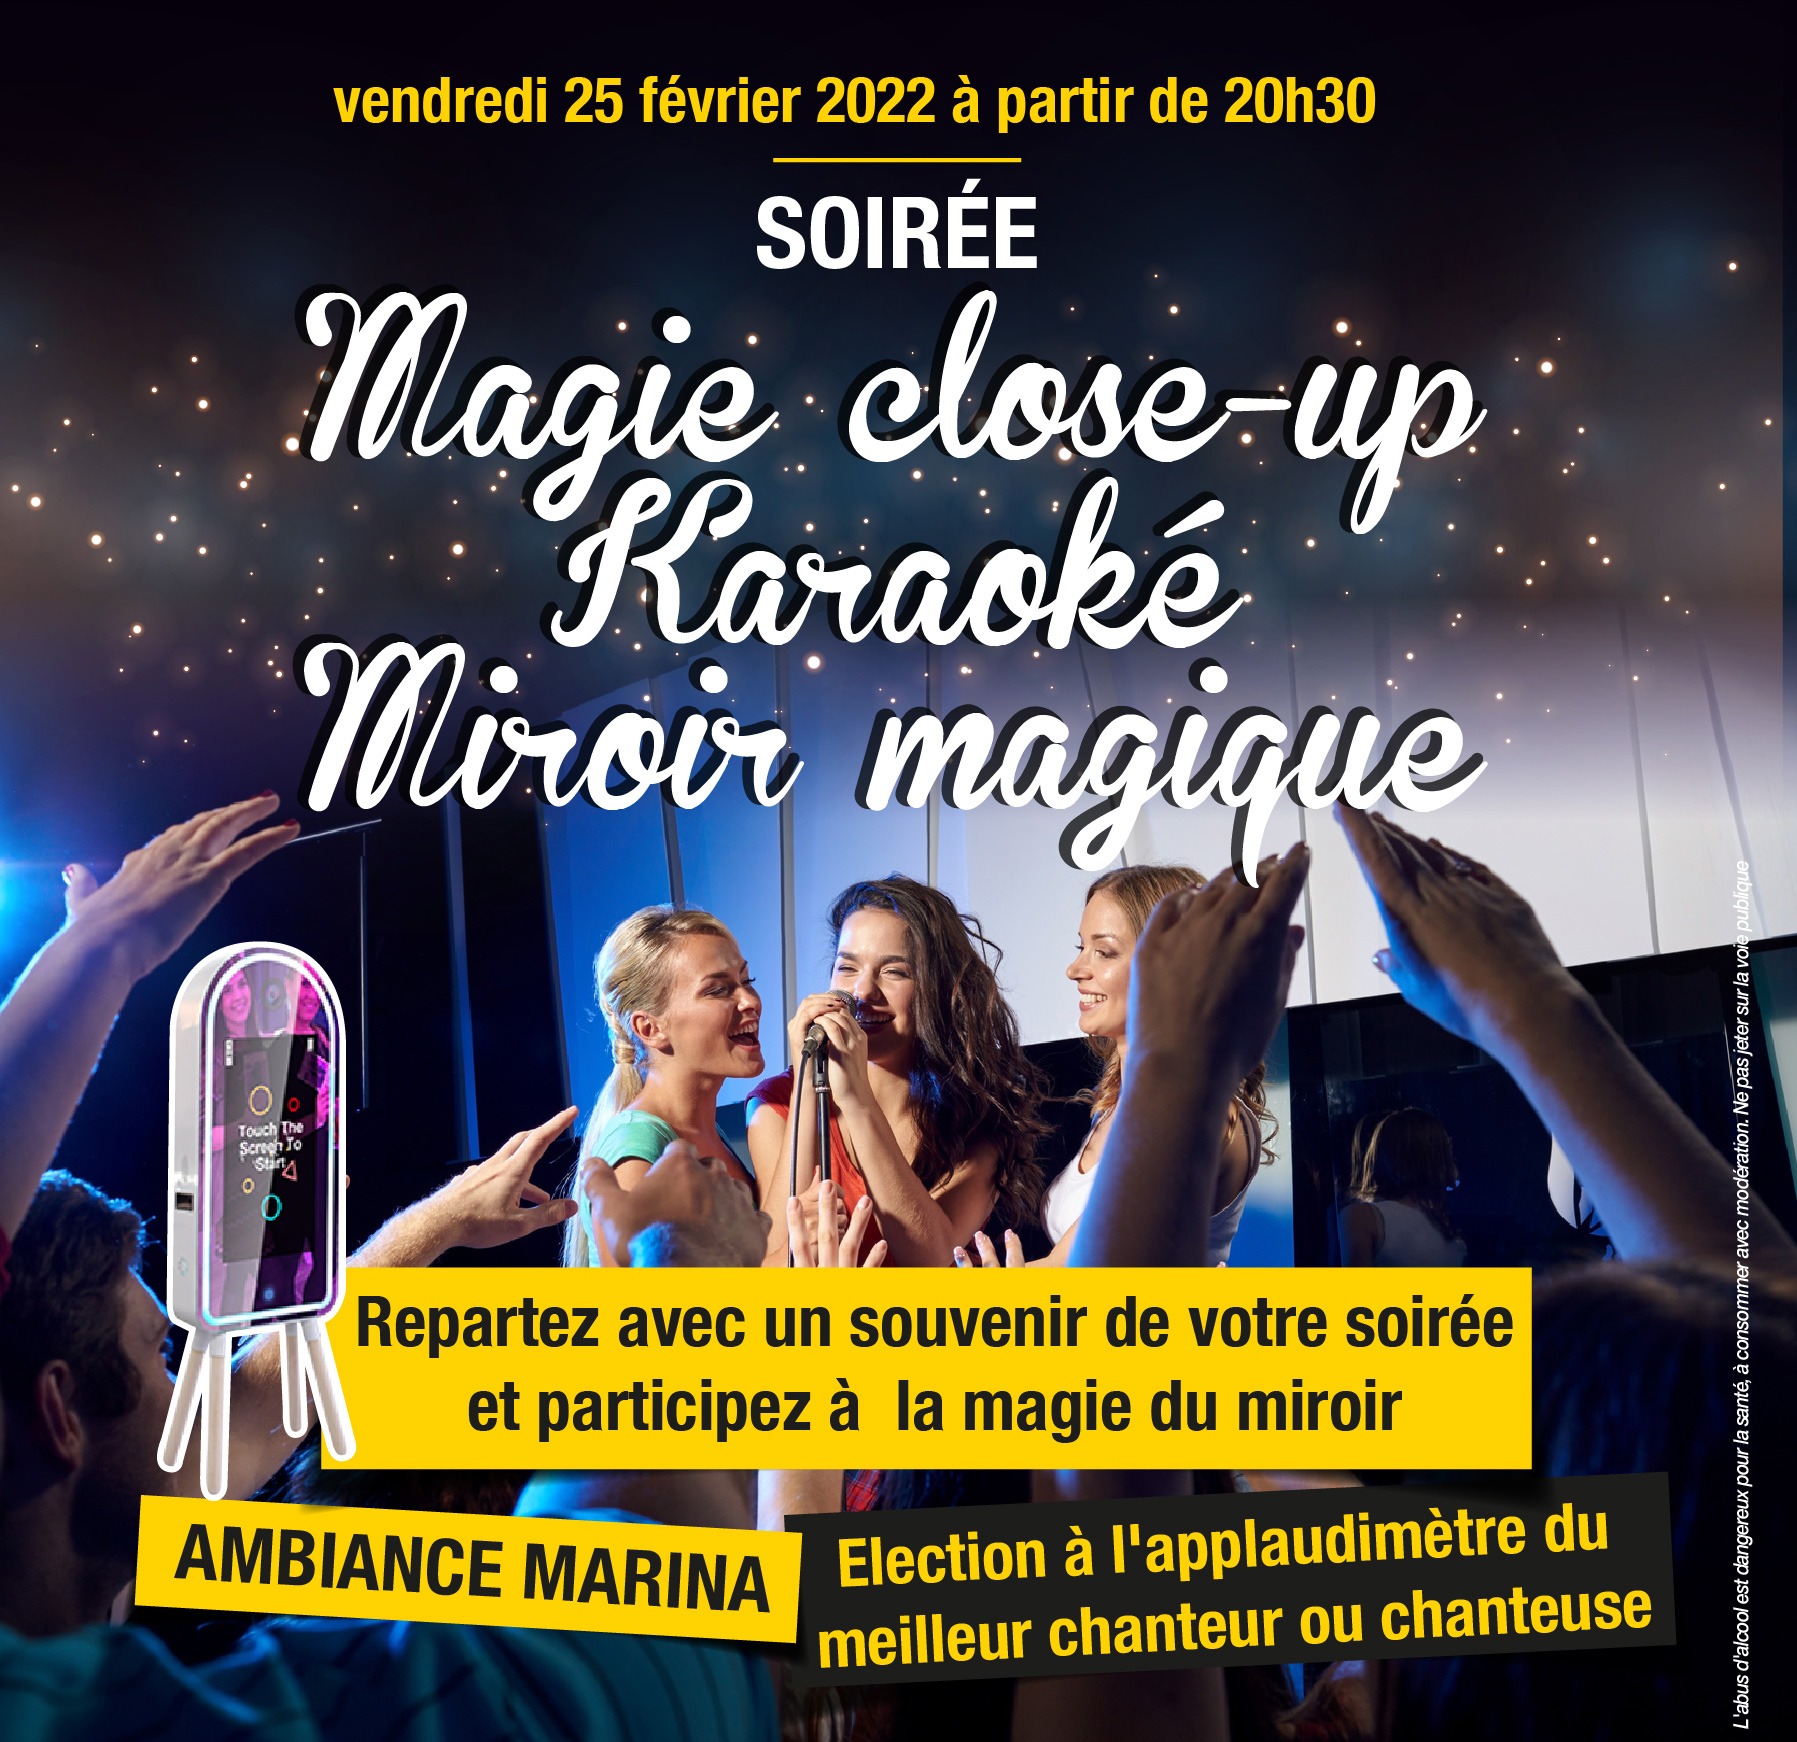 Soirée Magie Close-Up Karaoké miroir magique - le 25 février 2022